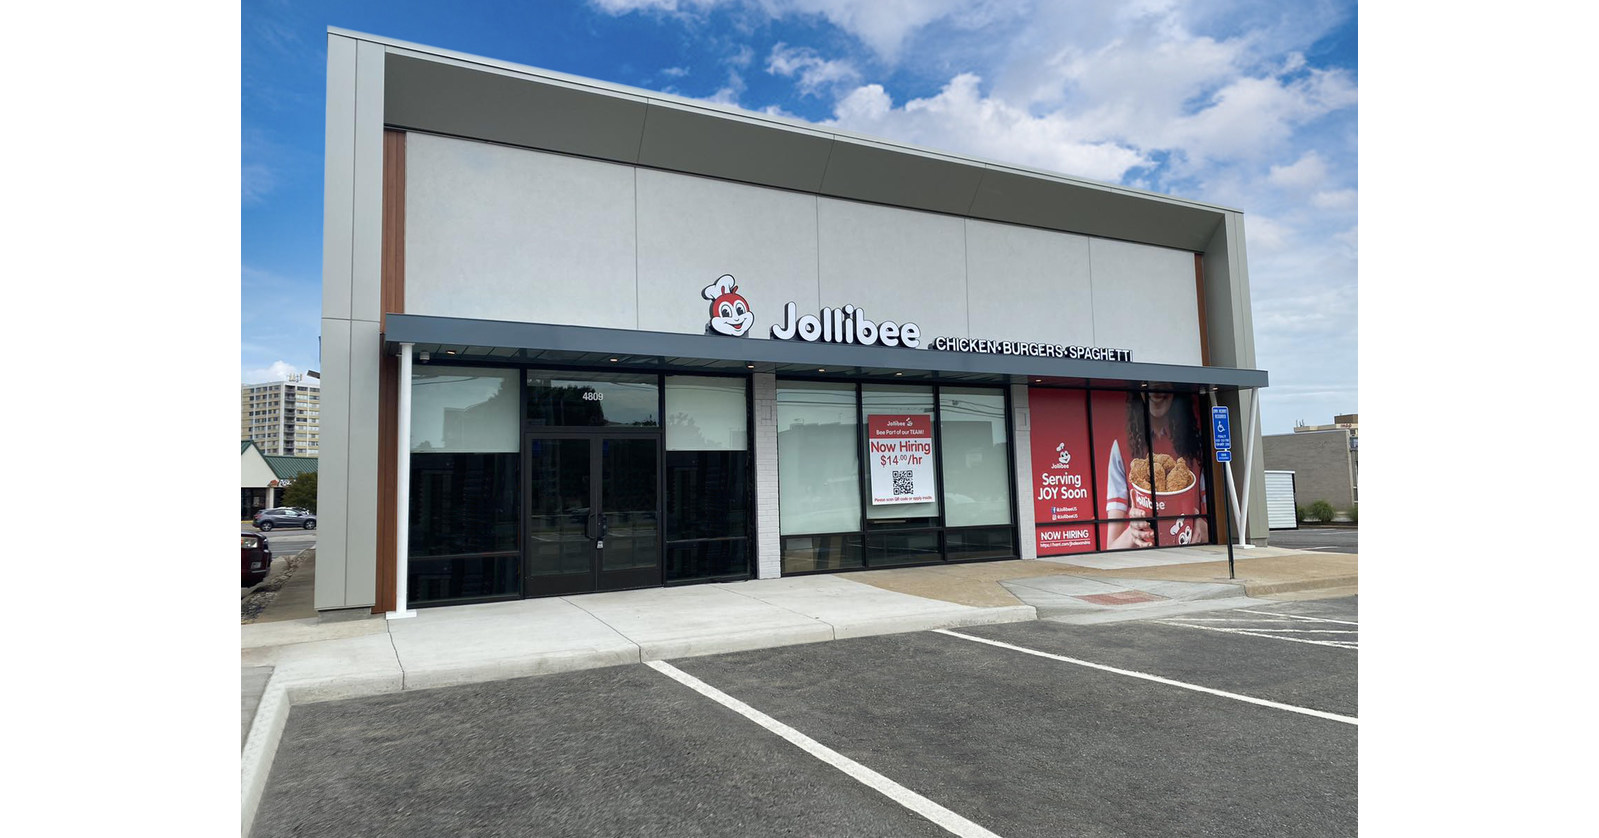 La sensación mundial de comida rápida, Jollibee, trae alegría al norte de Virginia con la apertura de una nueva tienda en Alexandria, Virginia, 26 de junio de 2022